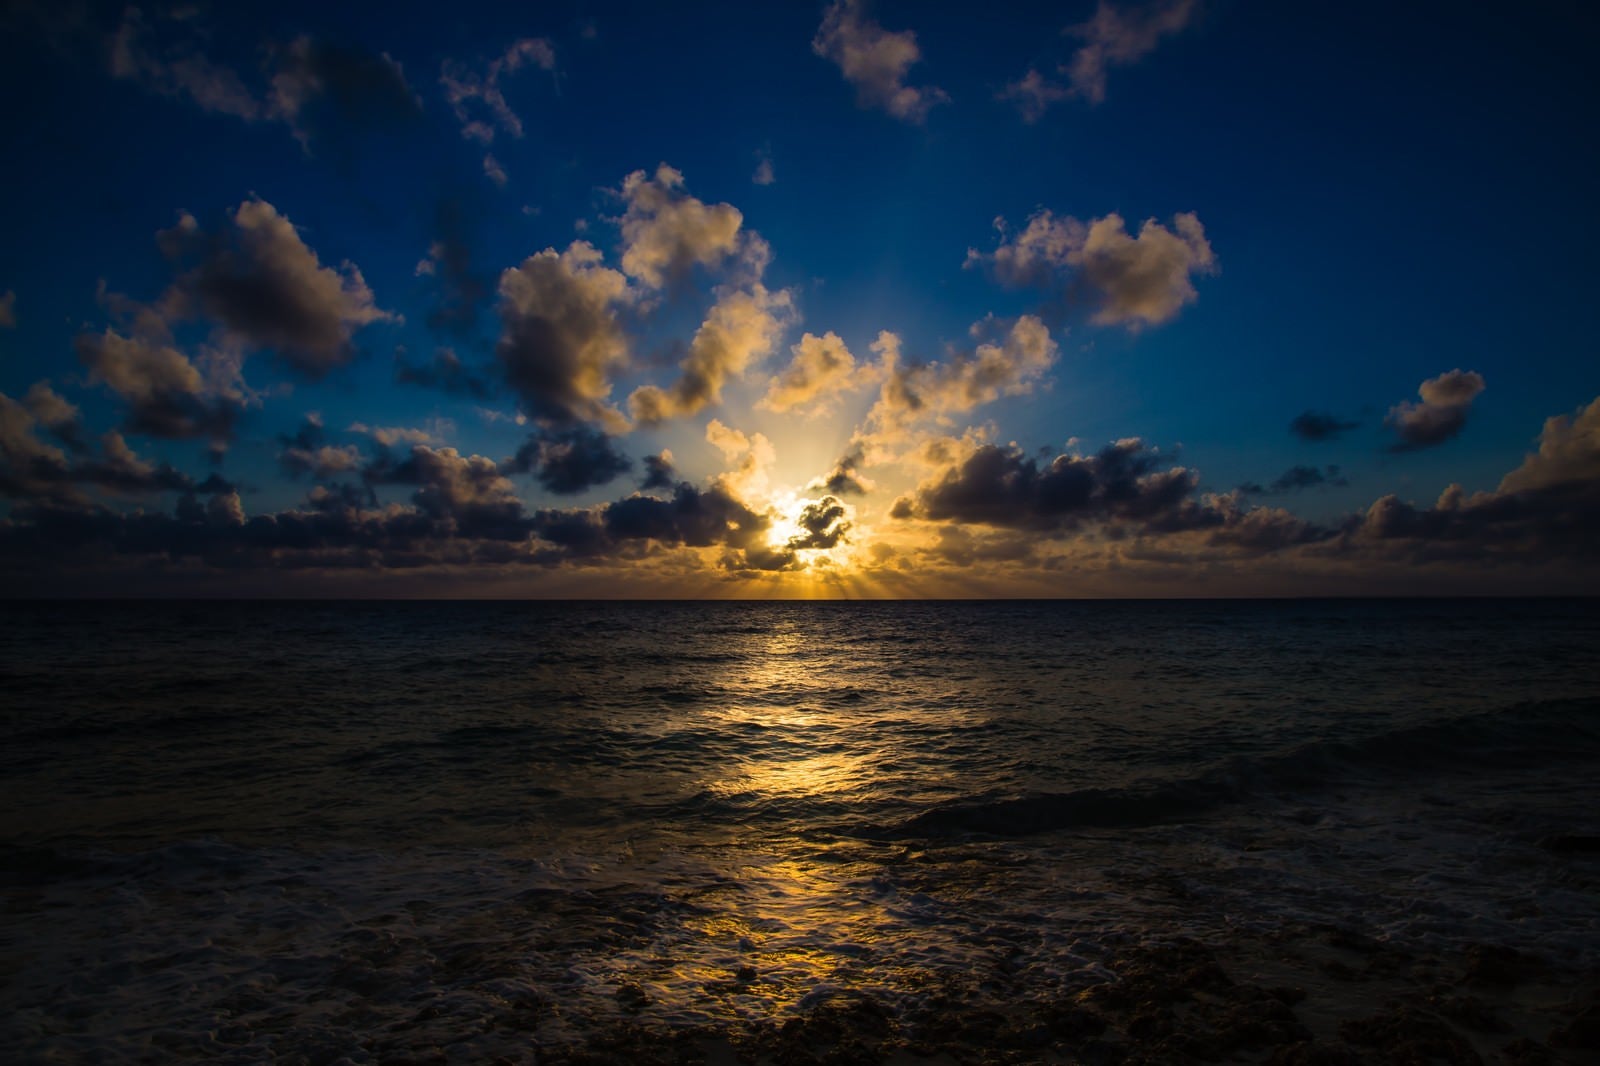 「宮古島長間浜の夕焼け」の写真